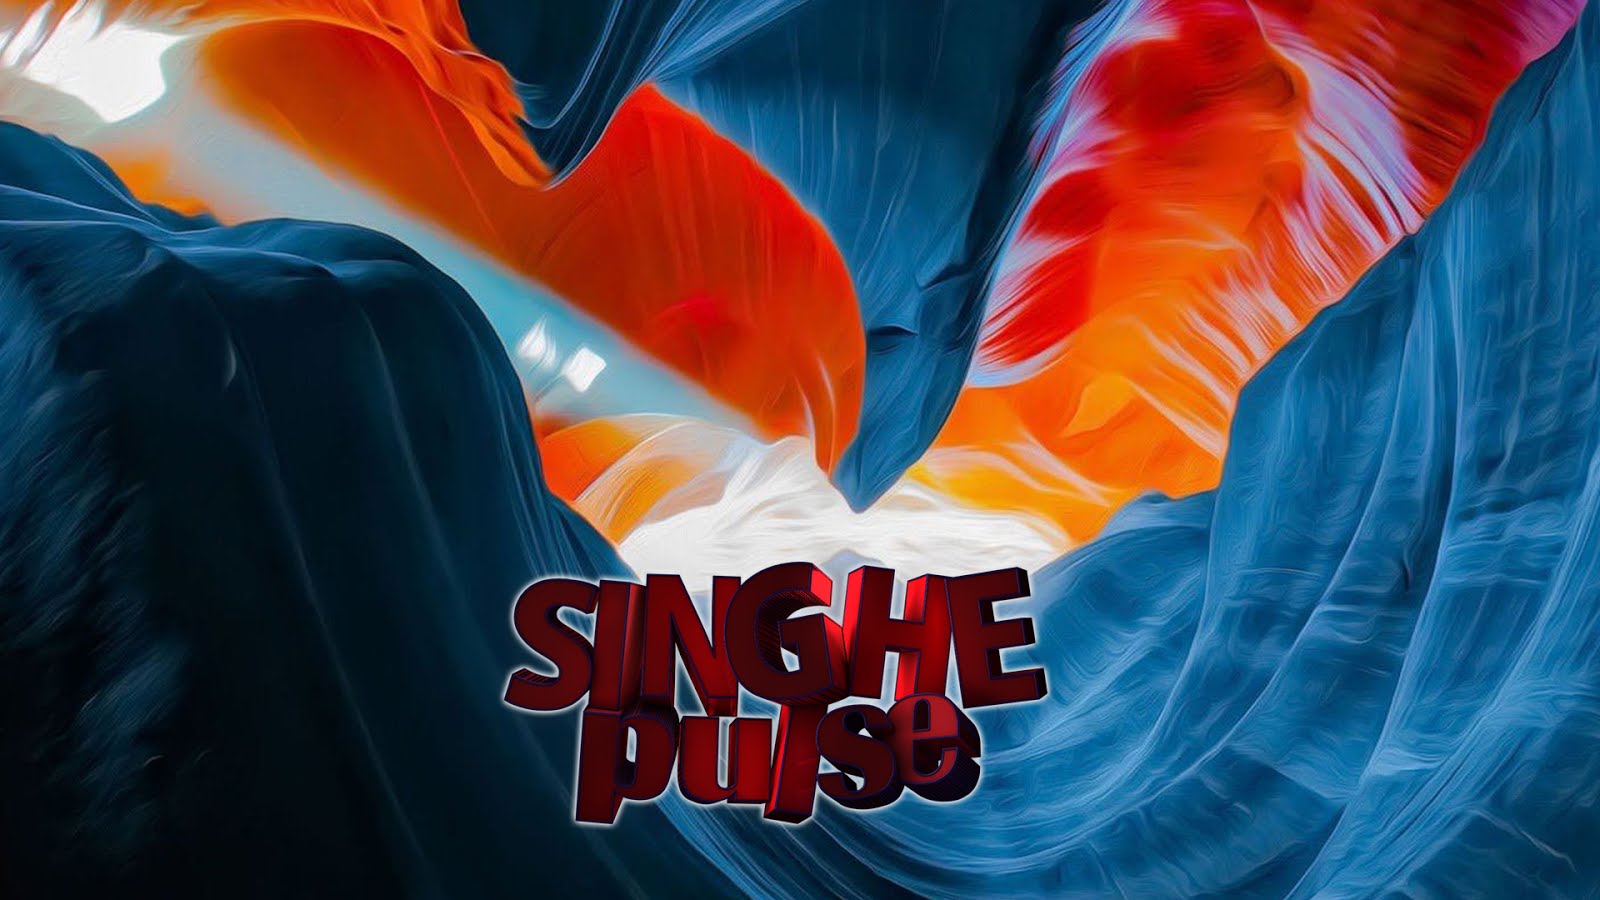 SINGHEpulse